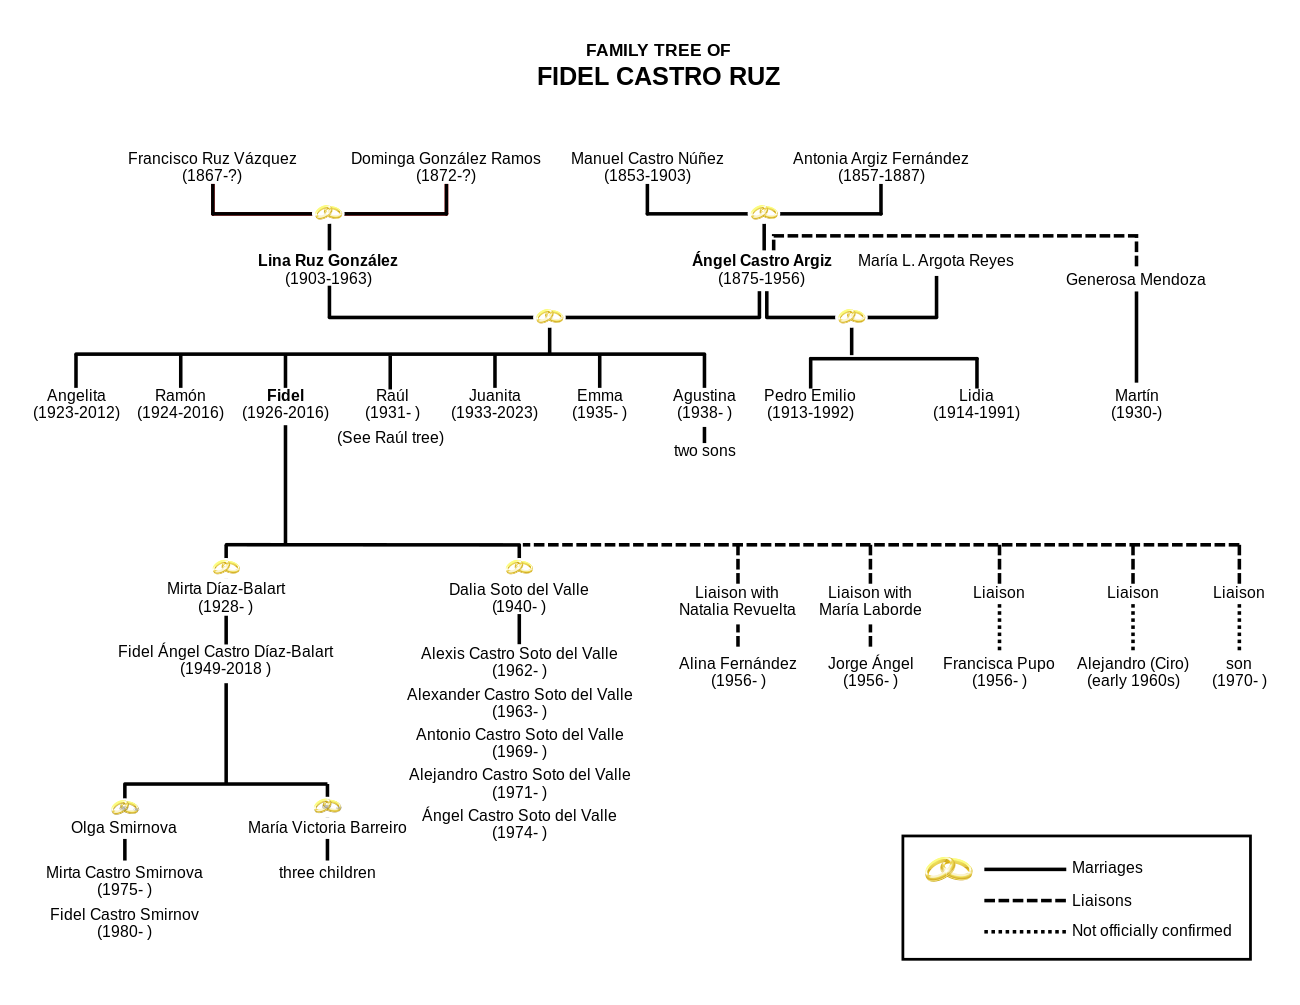 Castro's family tree